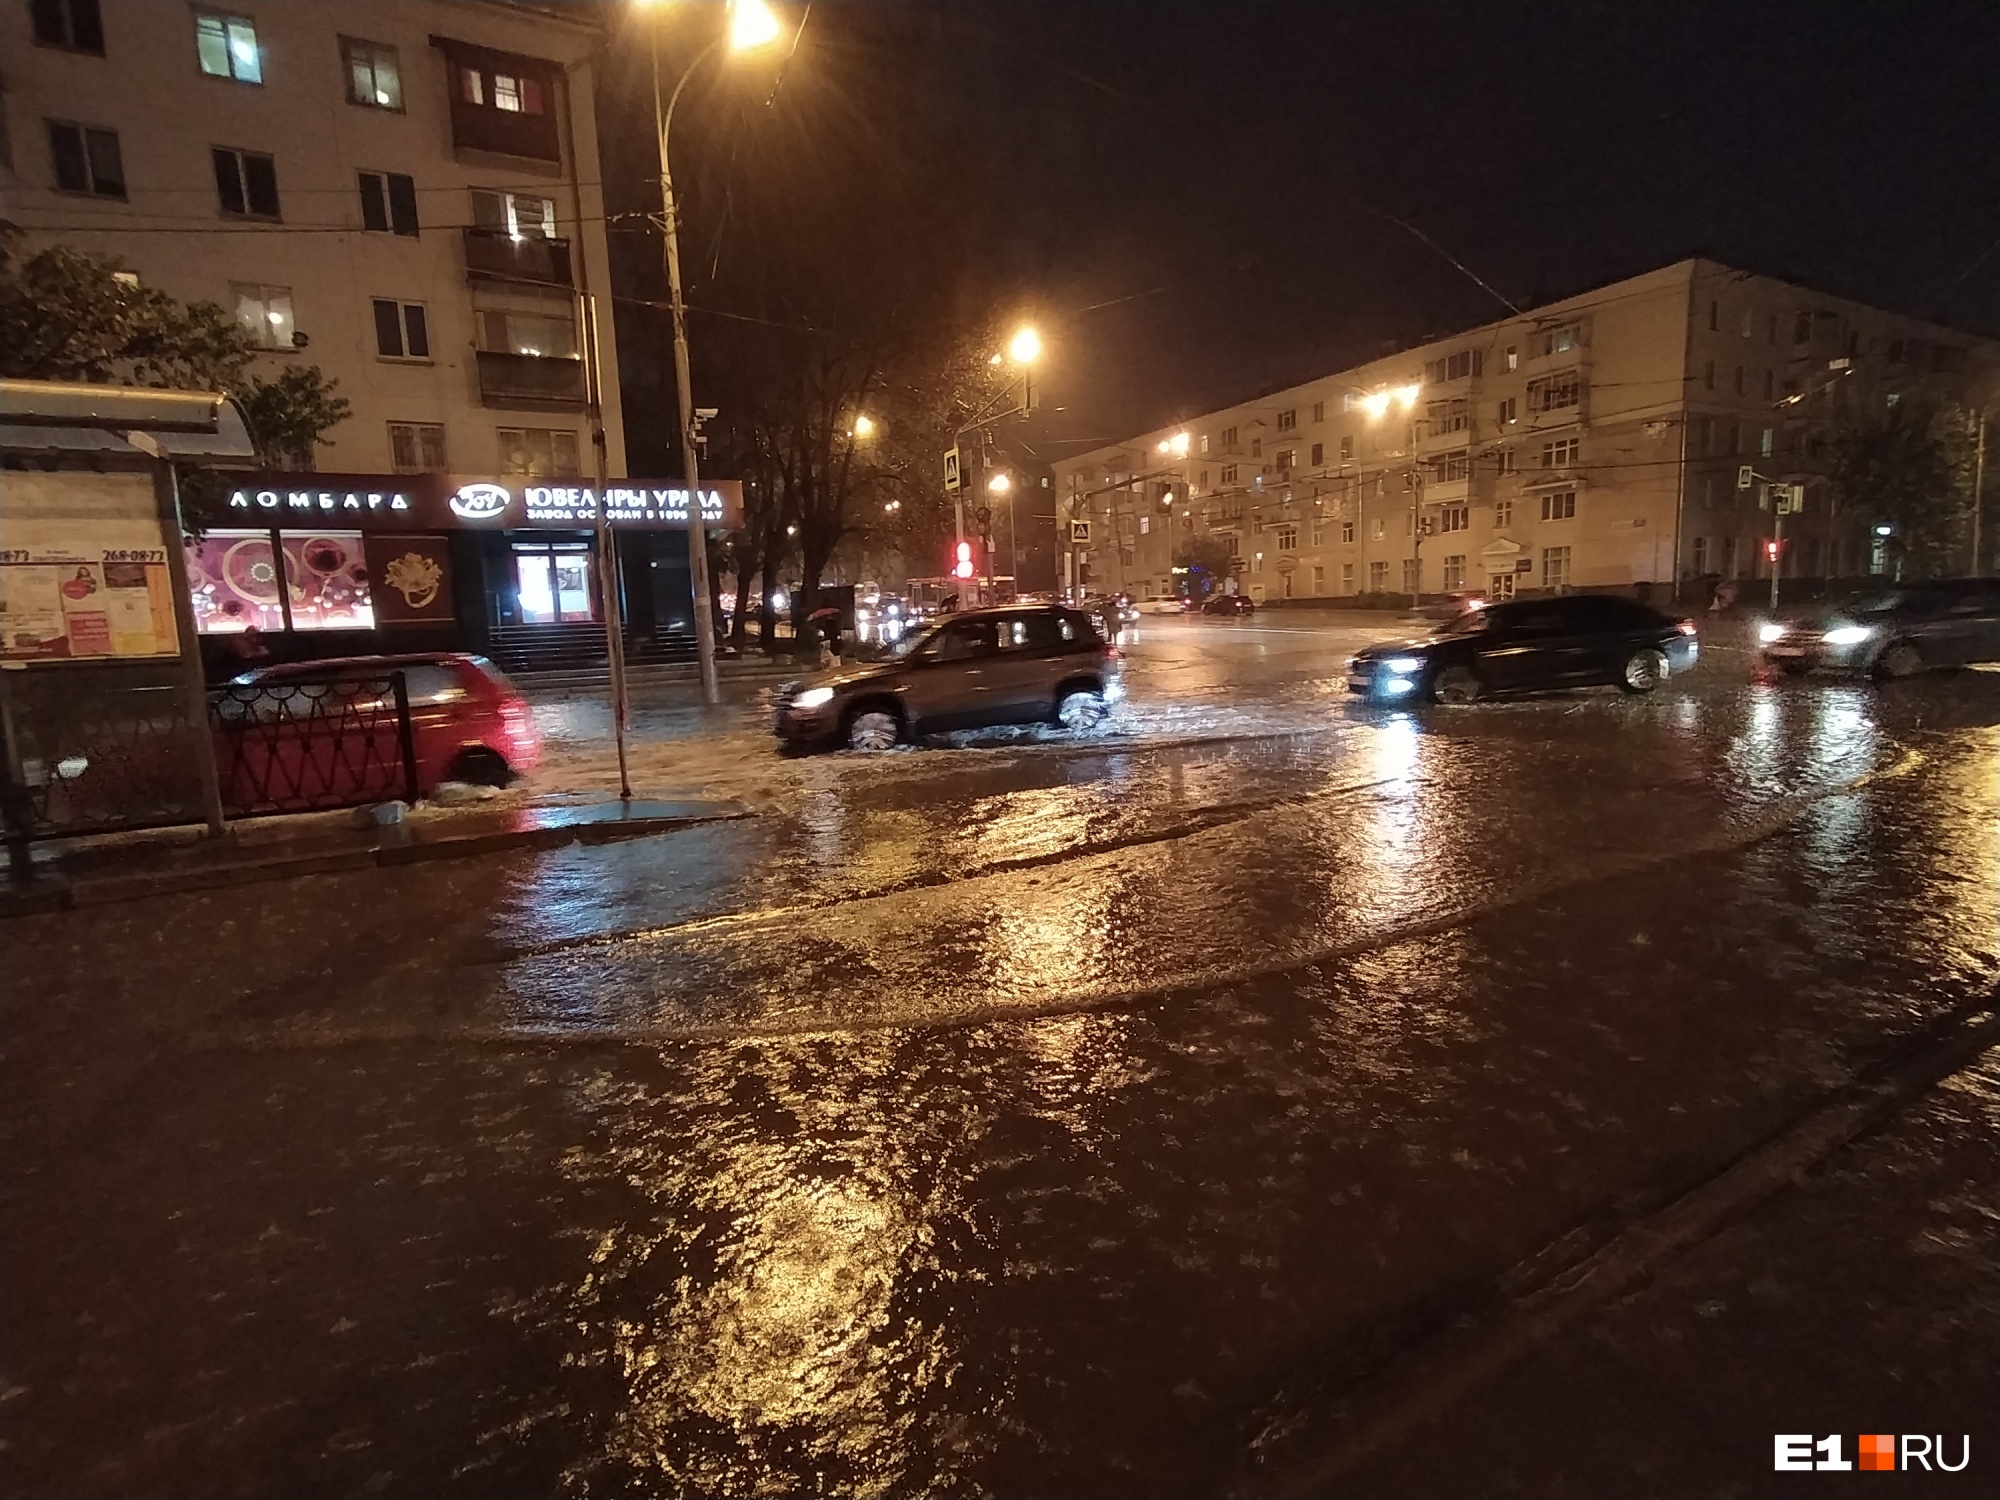 Машины плывут, а не едут: видеоподборка самых мокрых кадров с улиц Екатеринбурга